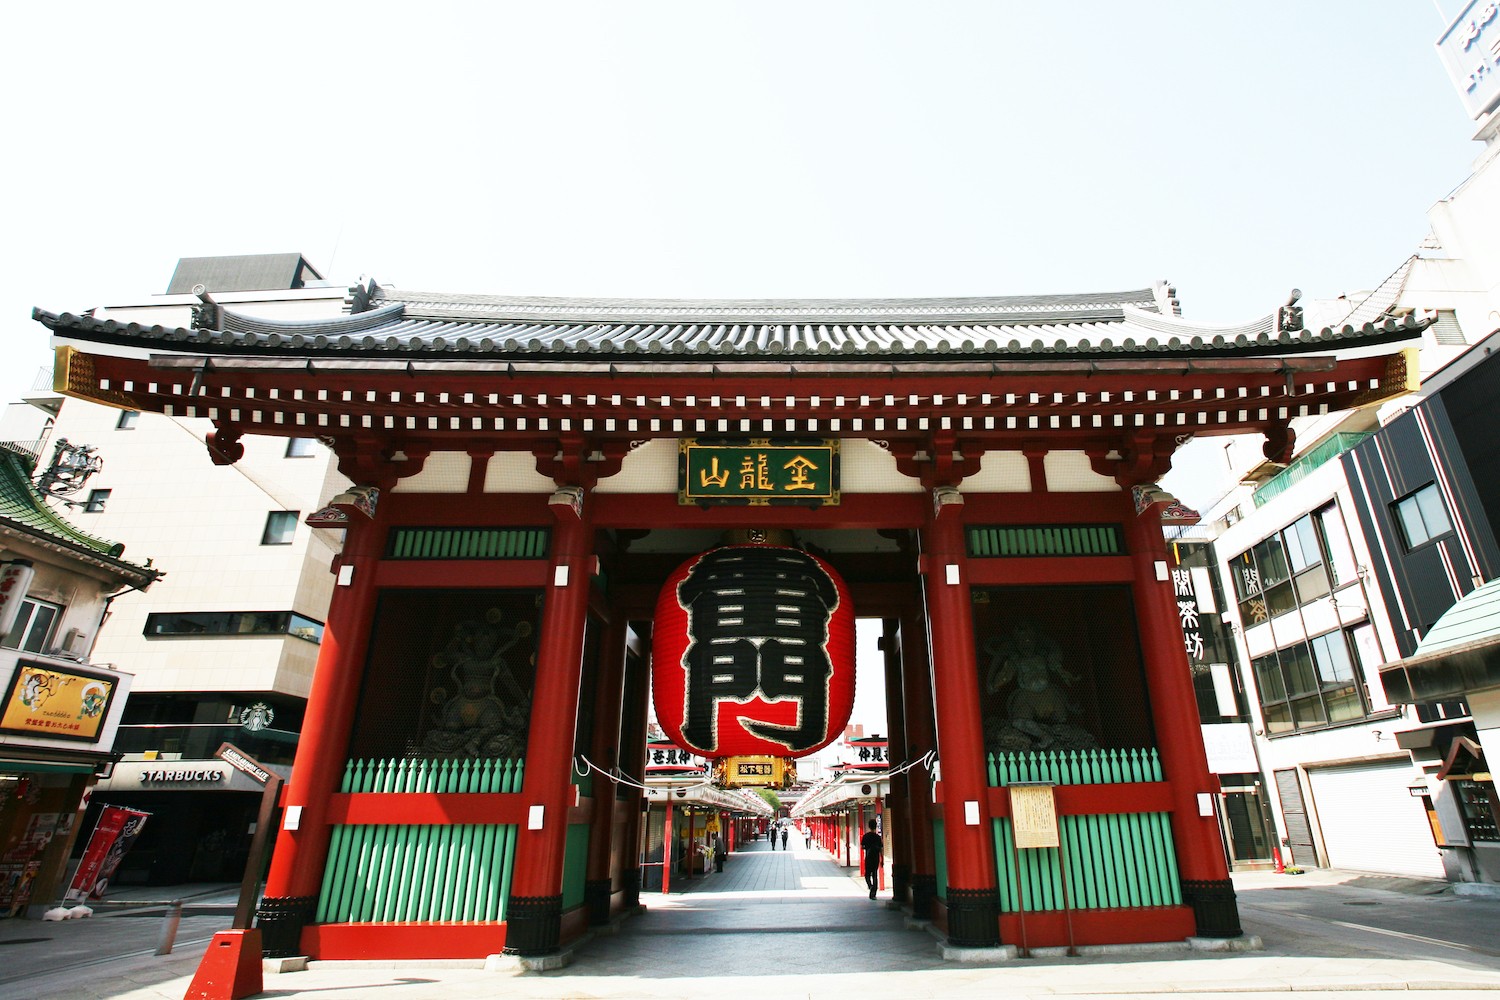 Viếng thăm ngôi chùa Asakusa Nhật Bản 